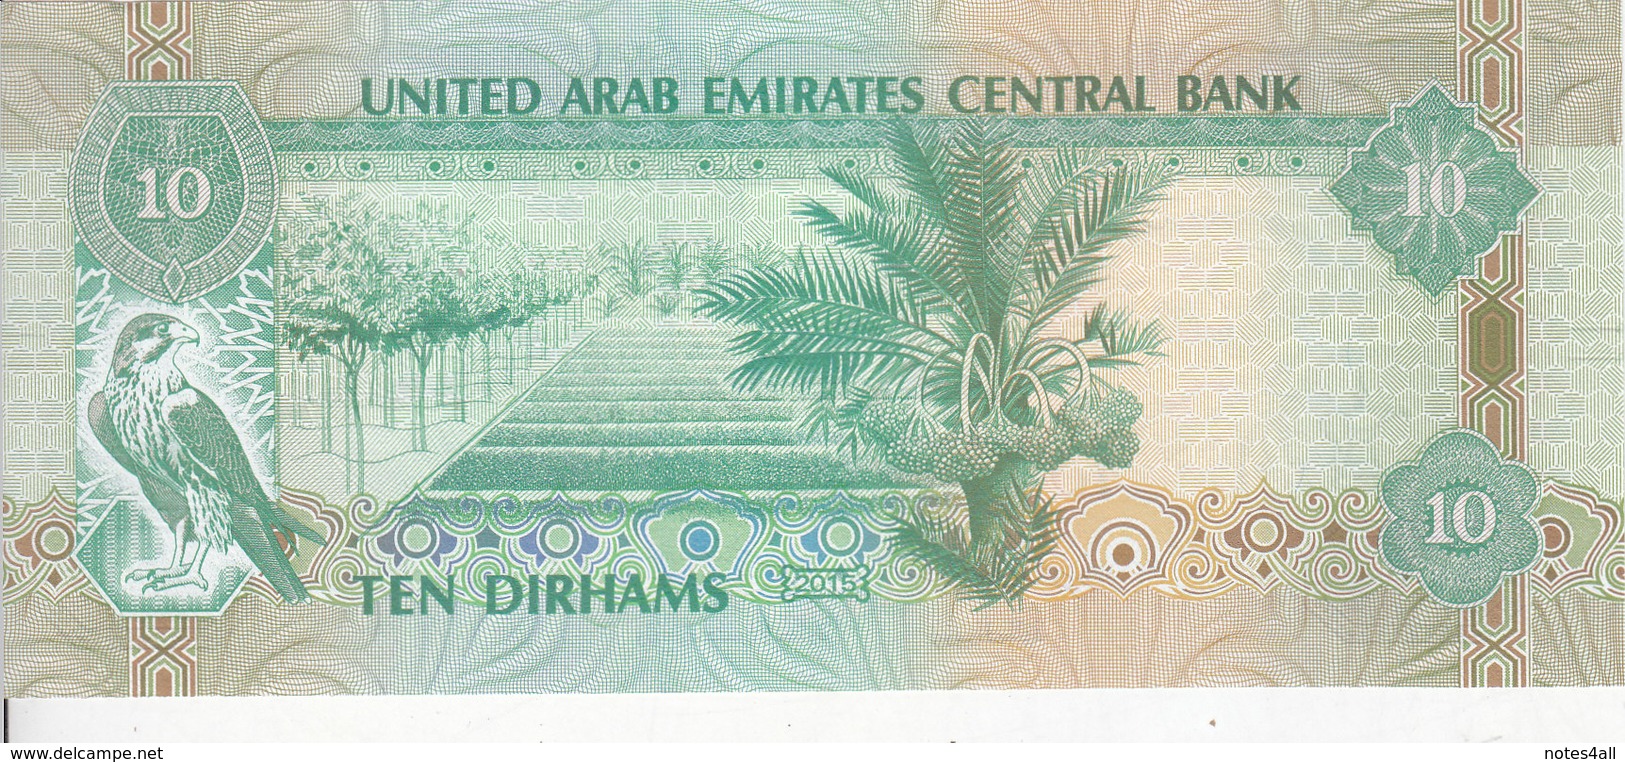 UAE UNITED ARAB EMIRATES 10 DIRHAMS 2015 P-27 UNC */* - United Arab Emirates